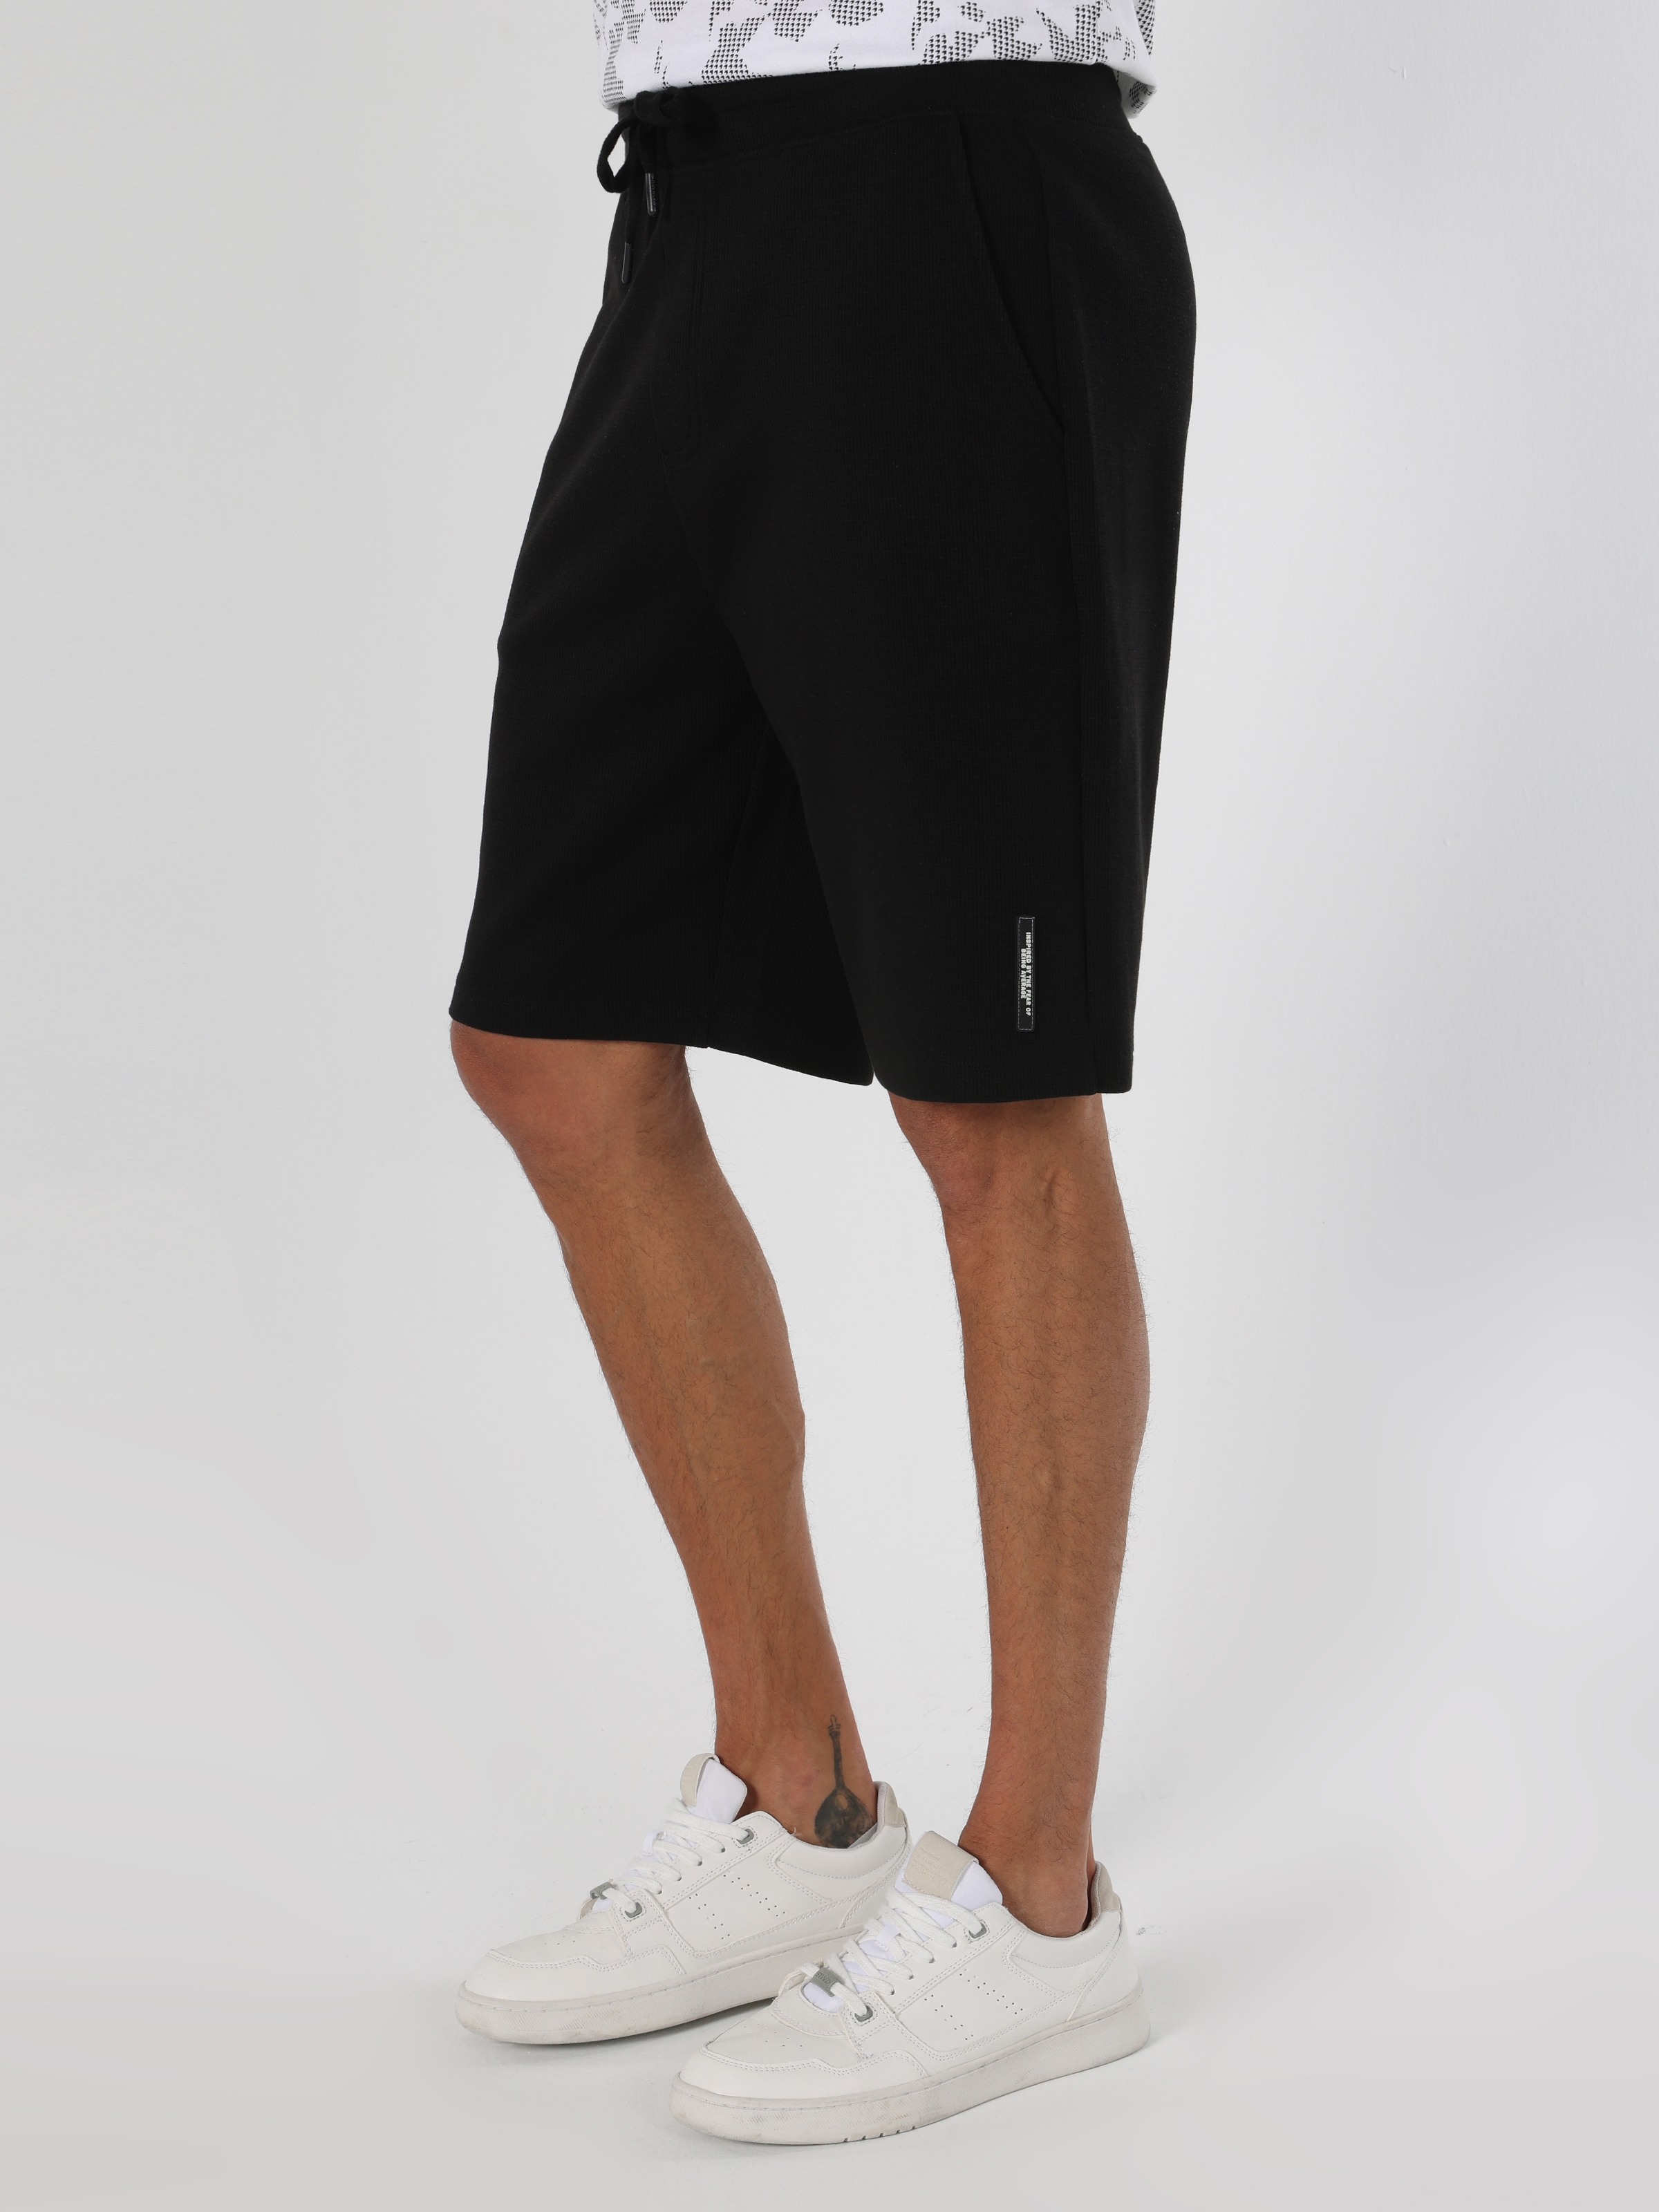 Afișați detalii pentru Short / Pantaloni Scurti De Barbati Negru Regular Fit 